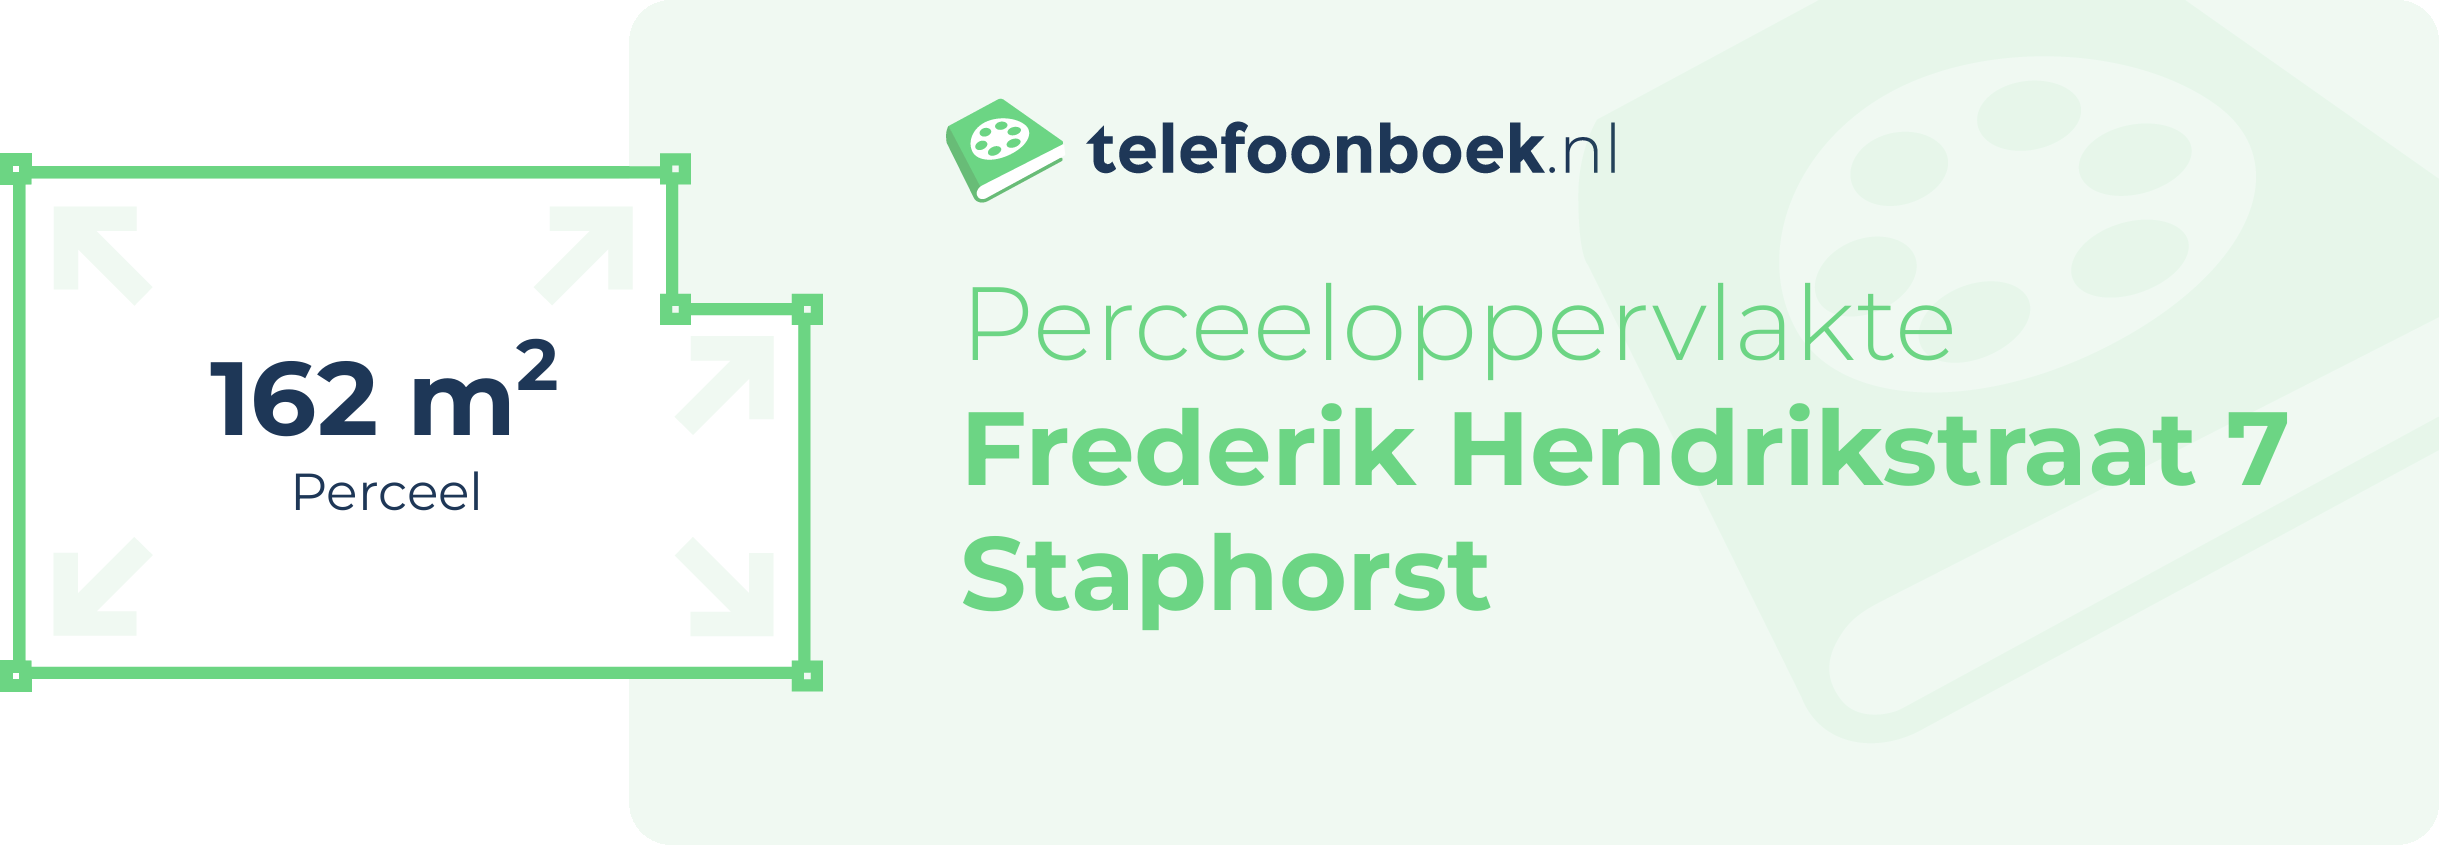 Perceeloppervlakte Frederik Hendrikstraat 7 Staphorst